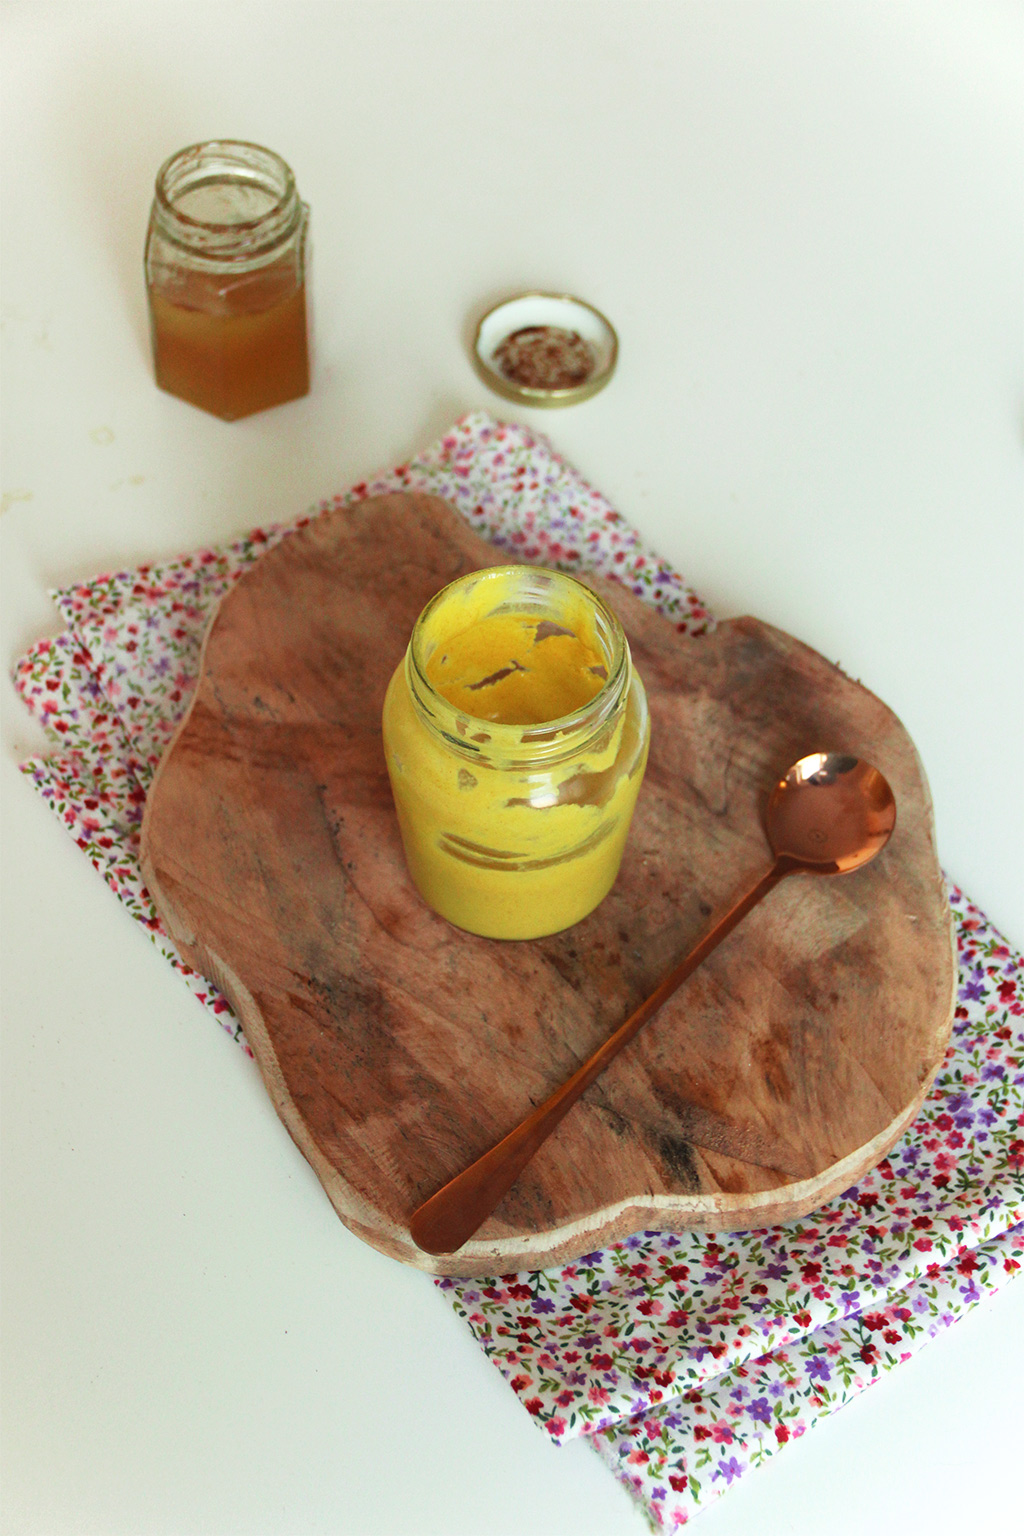 Moutarde au miel fait maison - Recette par La fille du boulanger